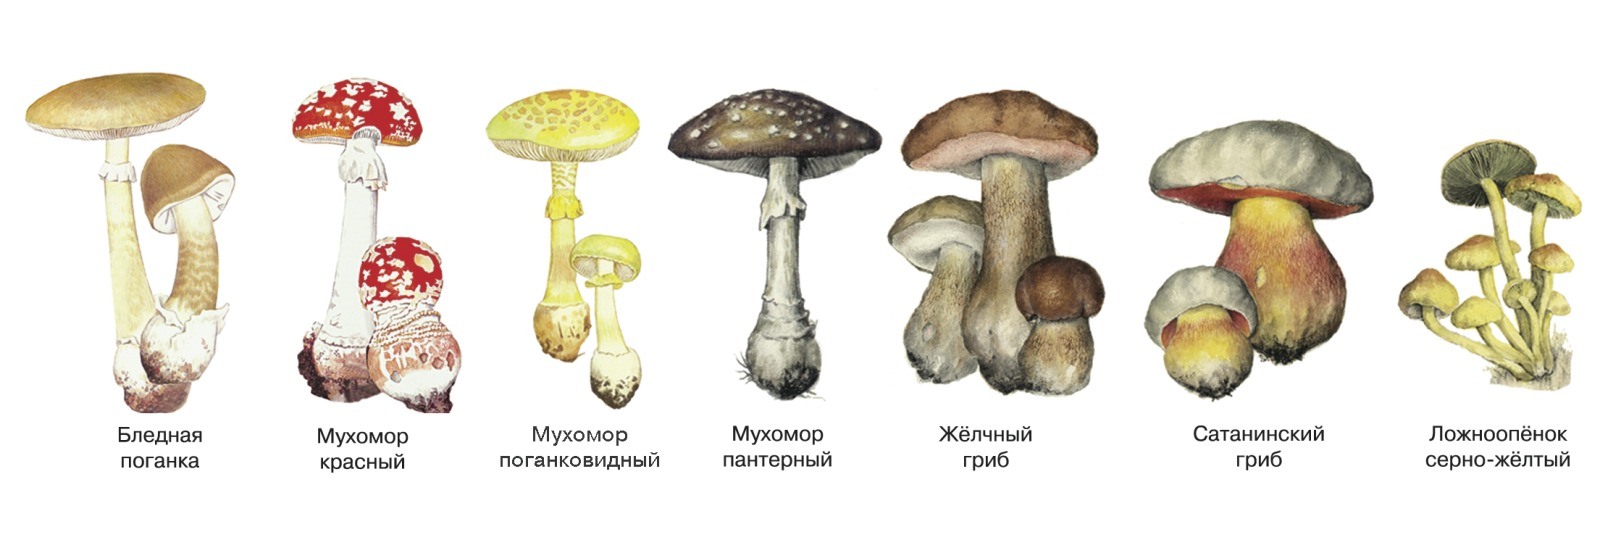 Опята бледная поганка. Несъедобные и ядовитые грибы. Несъедобные Шляпочные грибы. Название ядовитых и неядовитых грибов. Ядовитые грибы Самарской области.